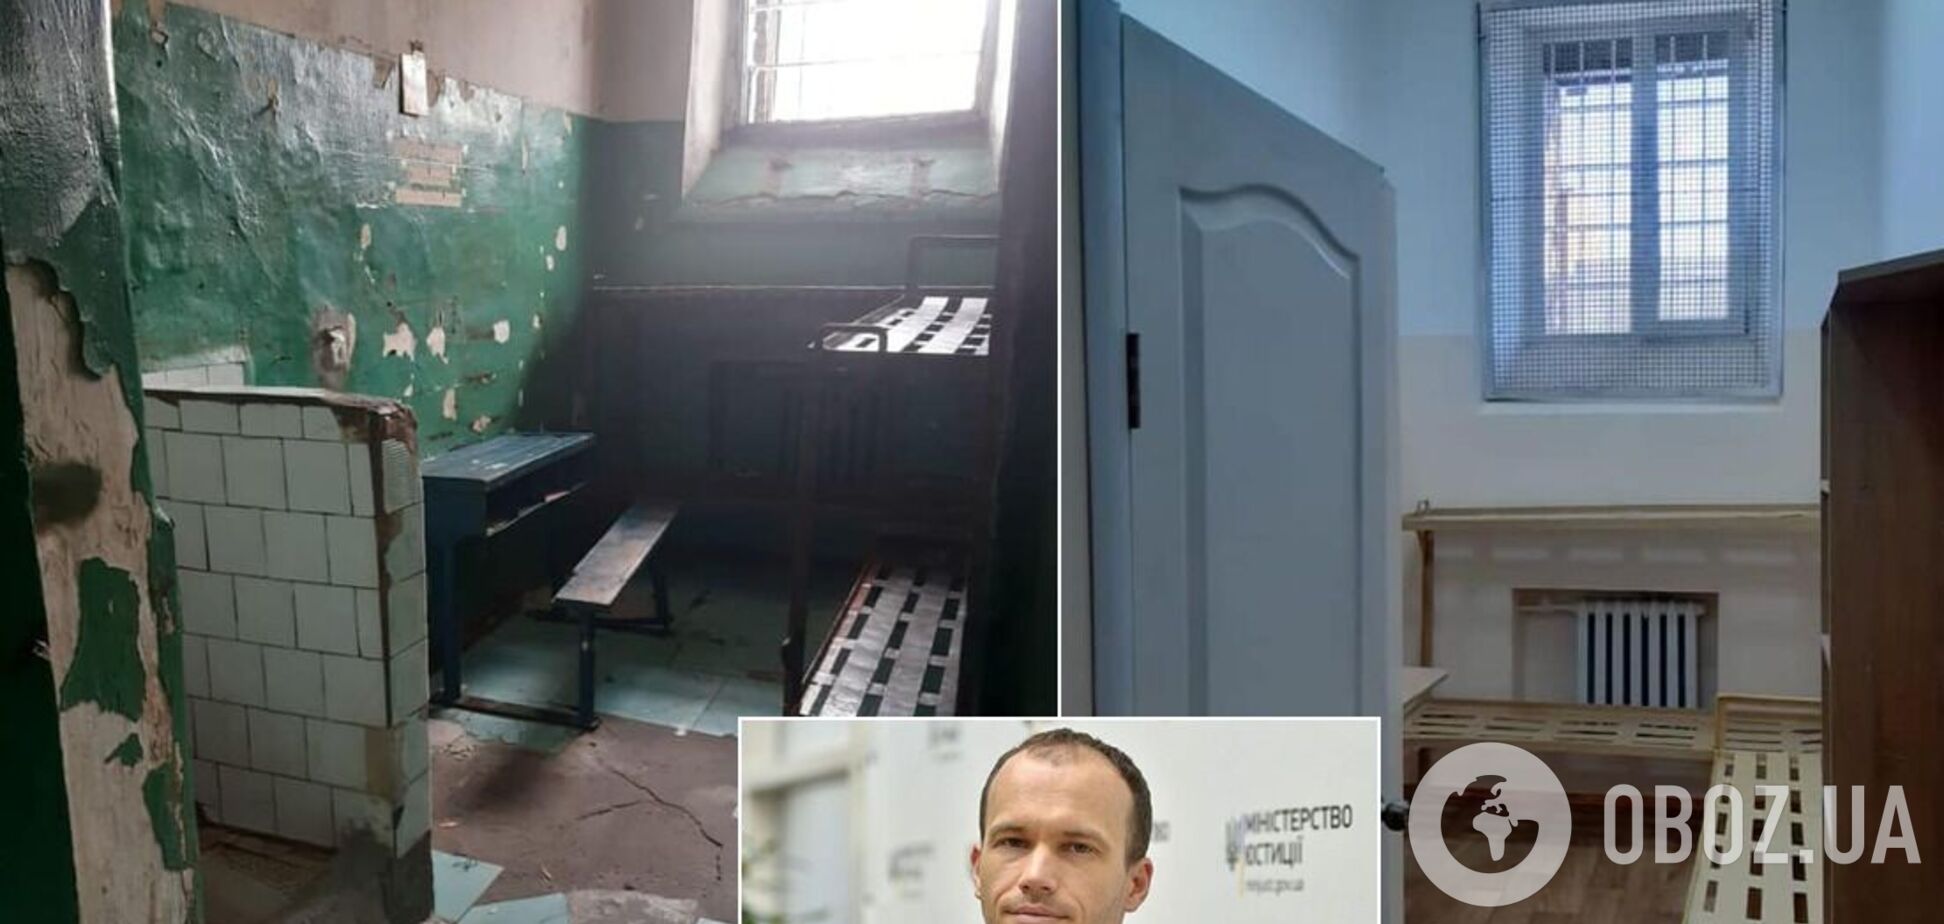 Малюська показал отремонтированные камеры в СИЗО. Фото до и после